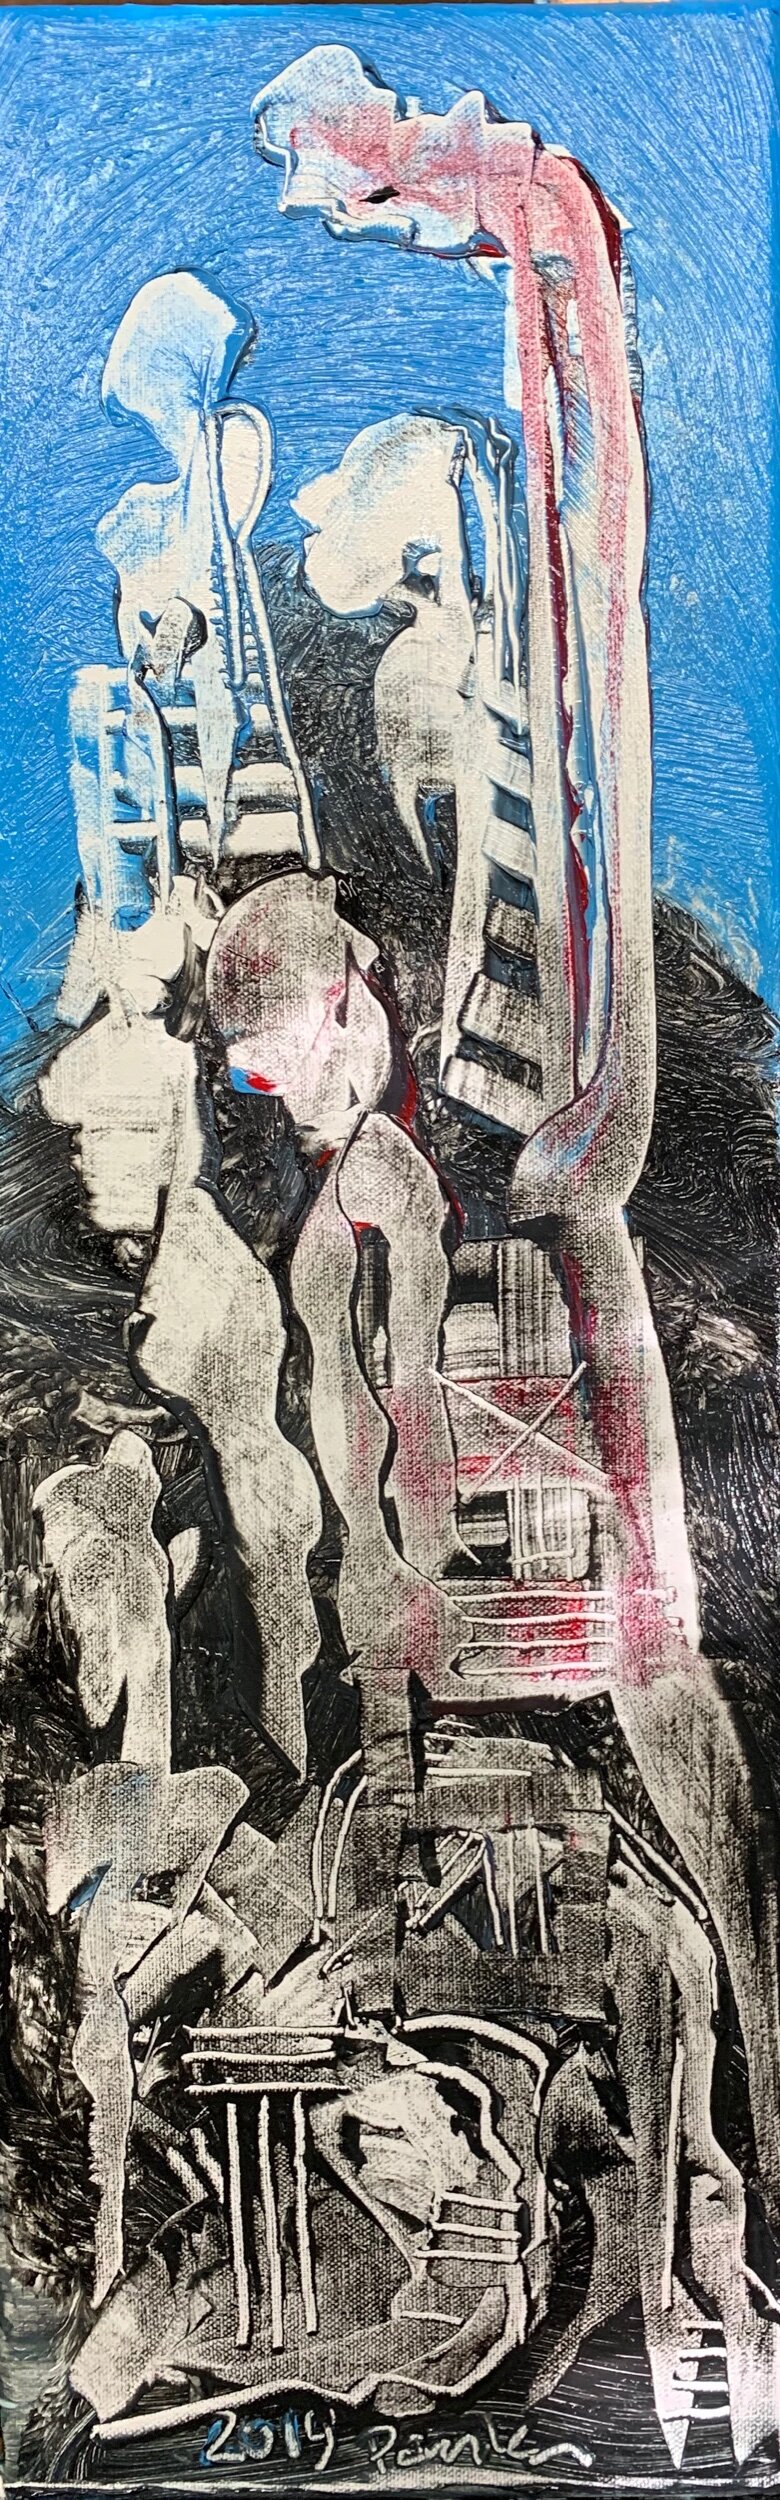 "Waiting" 2019 Acrylic on canvas 24"x8"